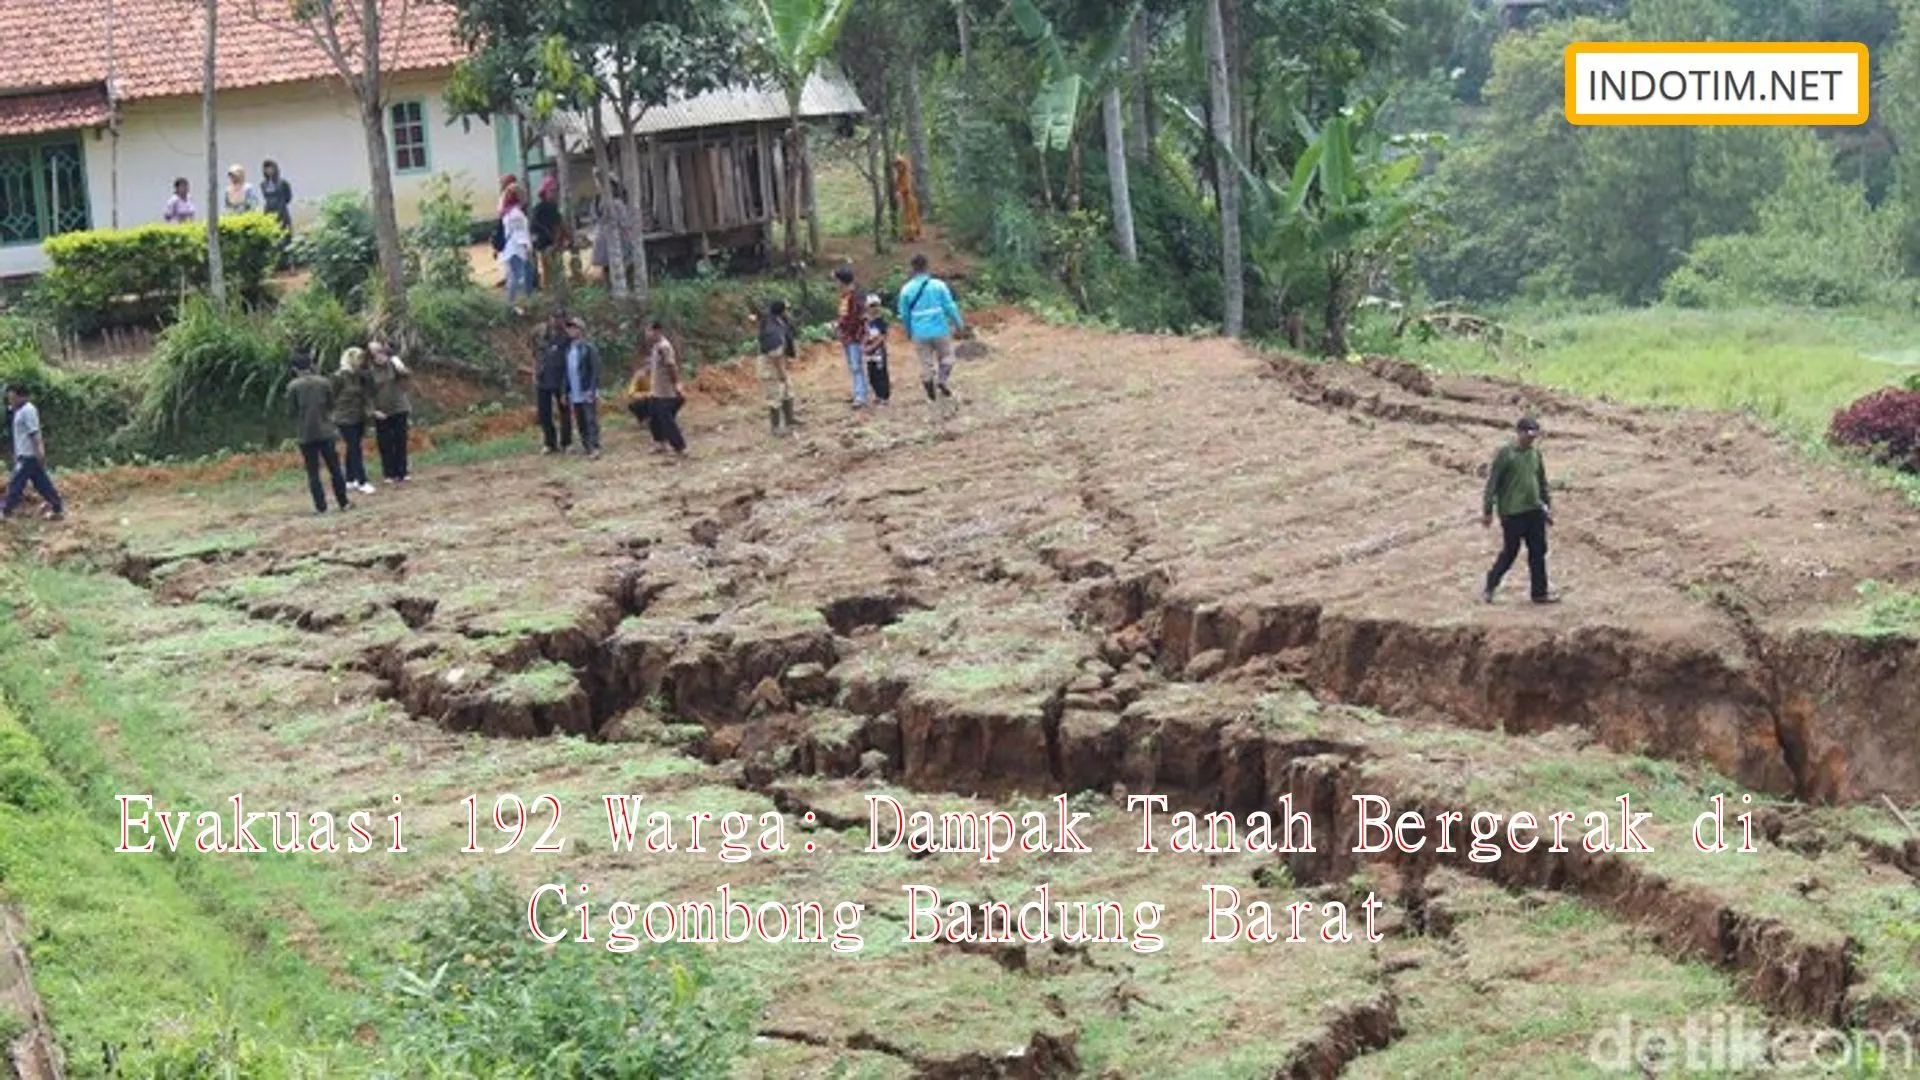 Evakuasi 192 Warga: Dampak Tanah Bergerak di Cigombong Bandung Barat